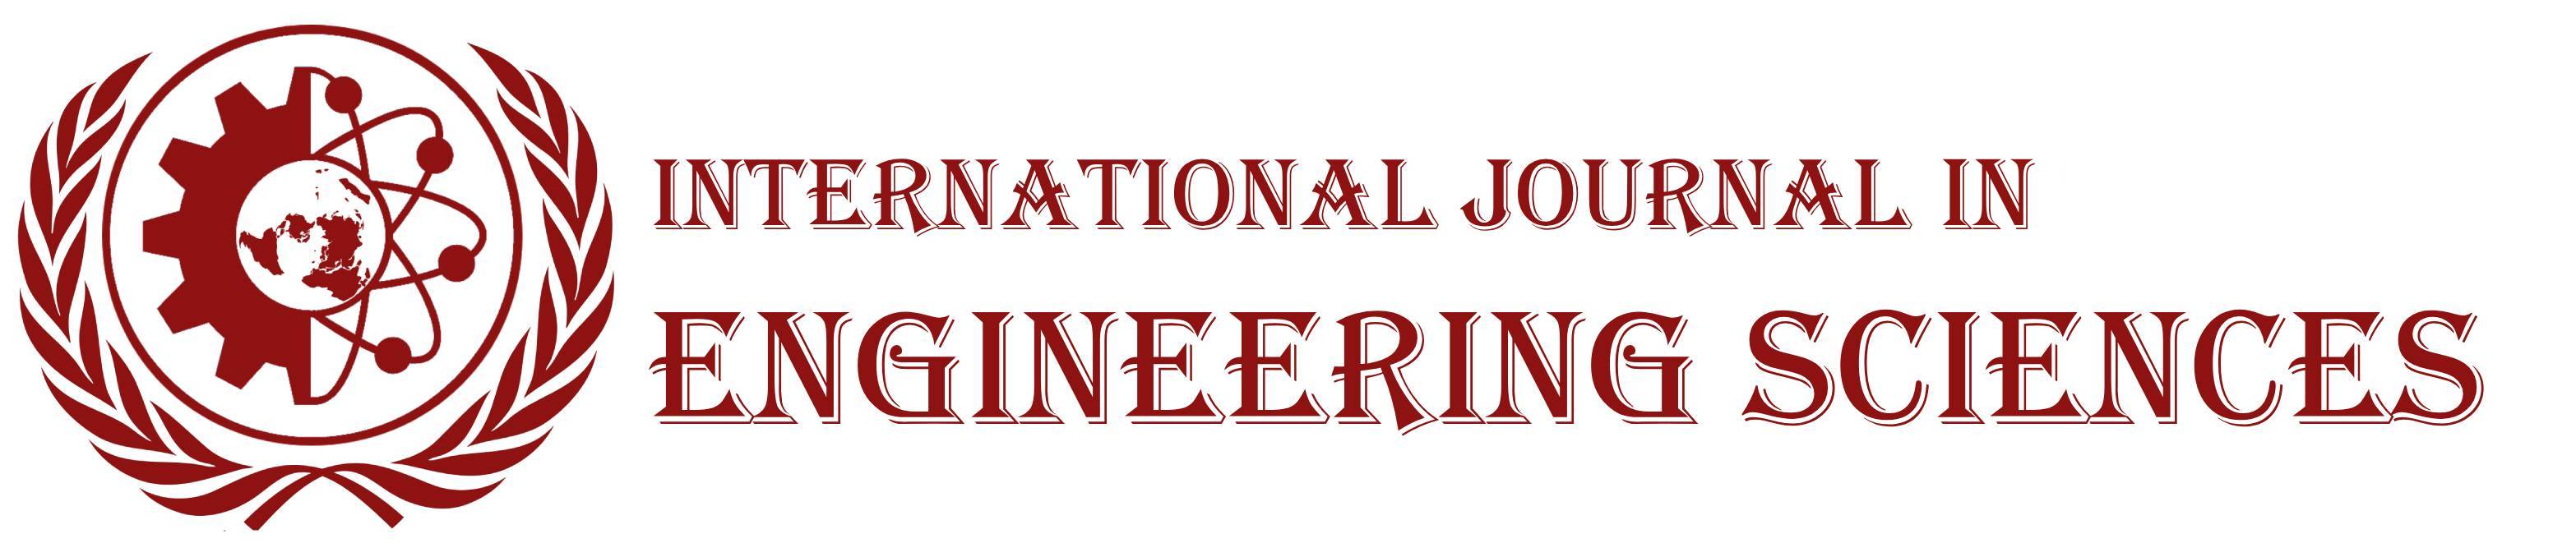 International Journal in Engineering Sciences